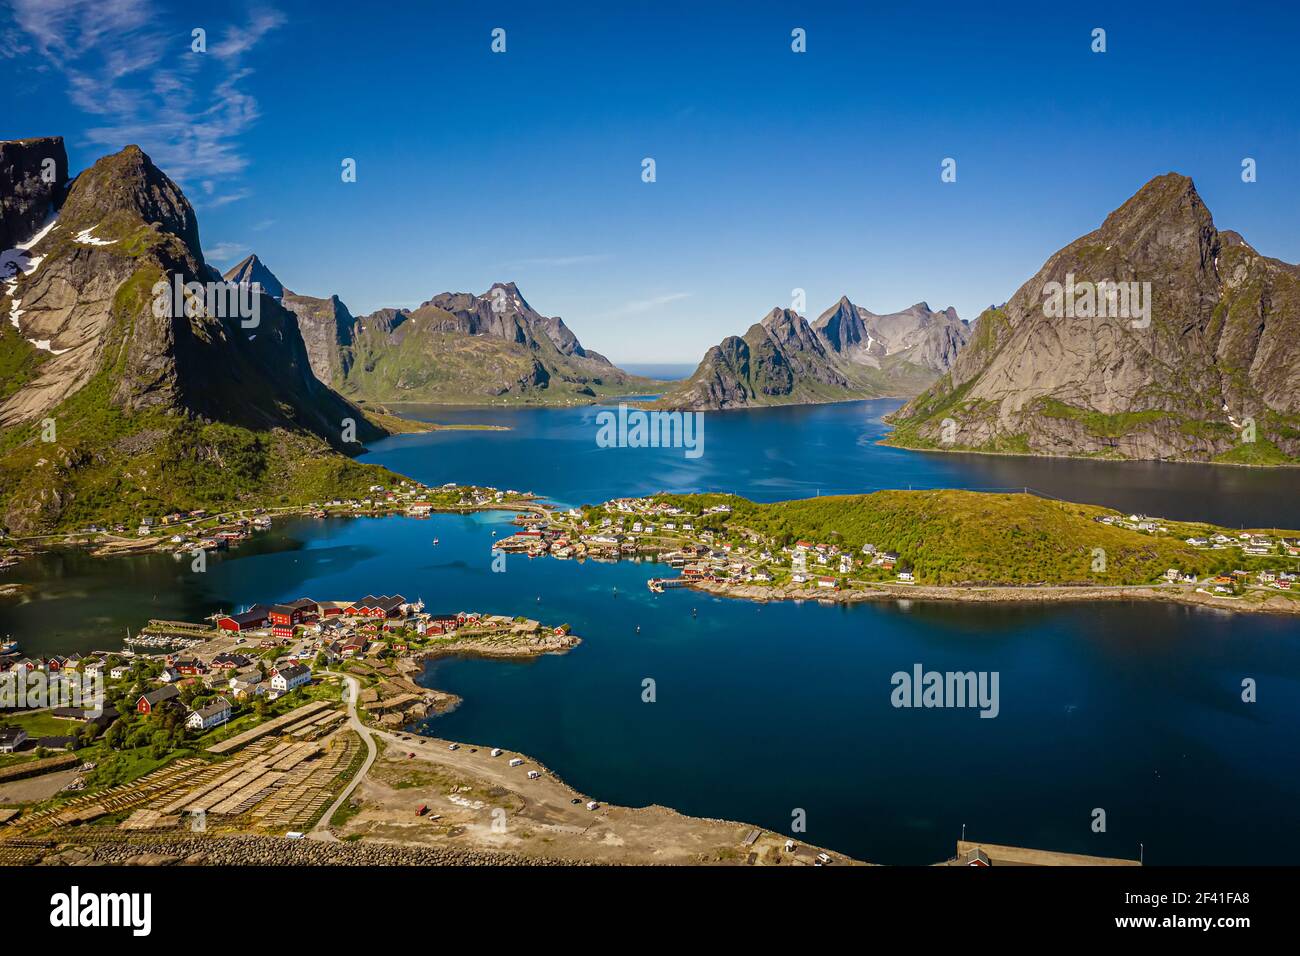 Panorama Lofoten è un arcipelago della contea di Nordland, in Norvegia. E' conosciuto per un paesaggio distintivo con montagne e picchi drammatici, mare aperto e baie riparate, spiagge e terre intatte. Foto Stock